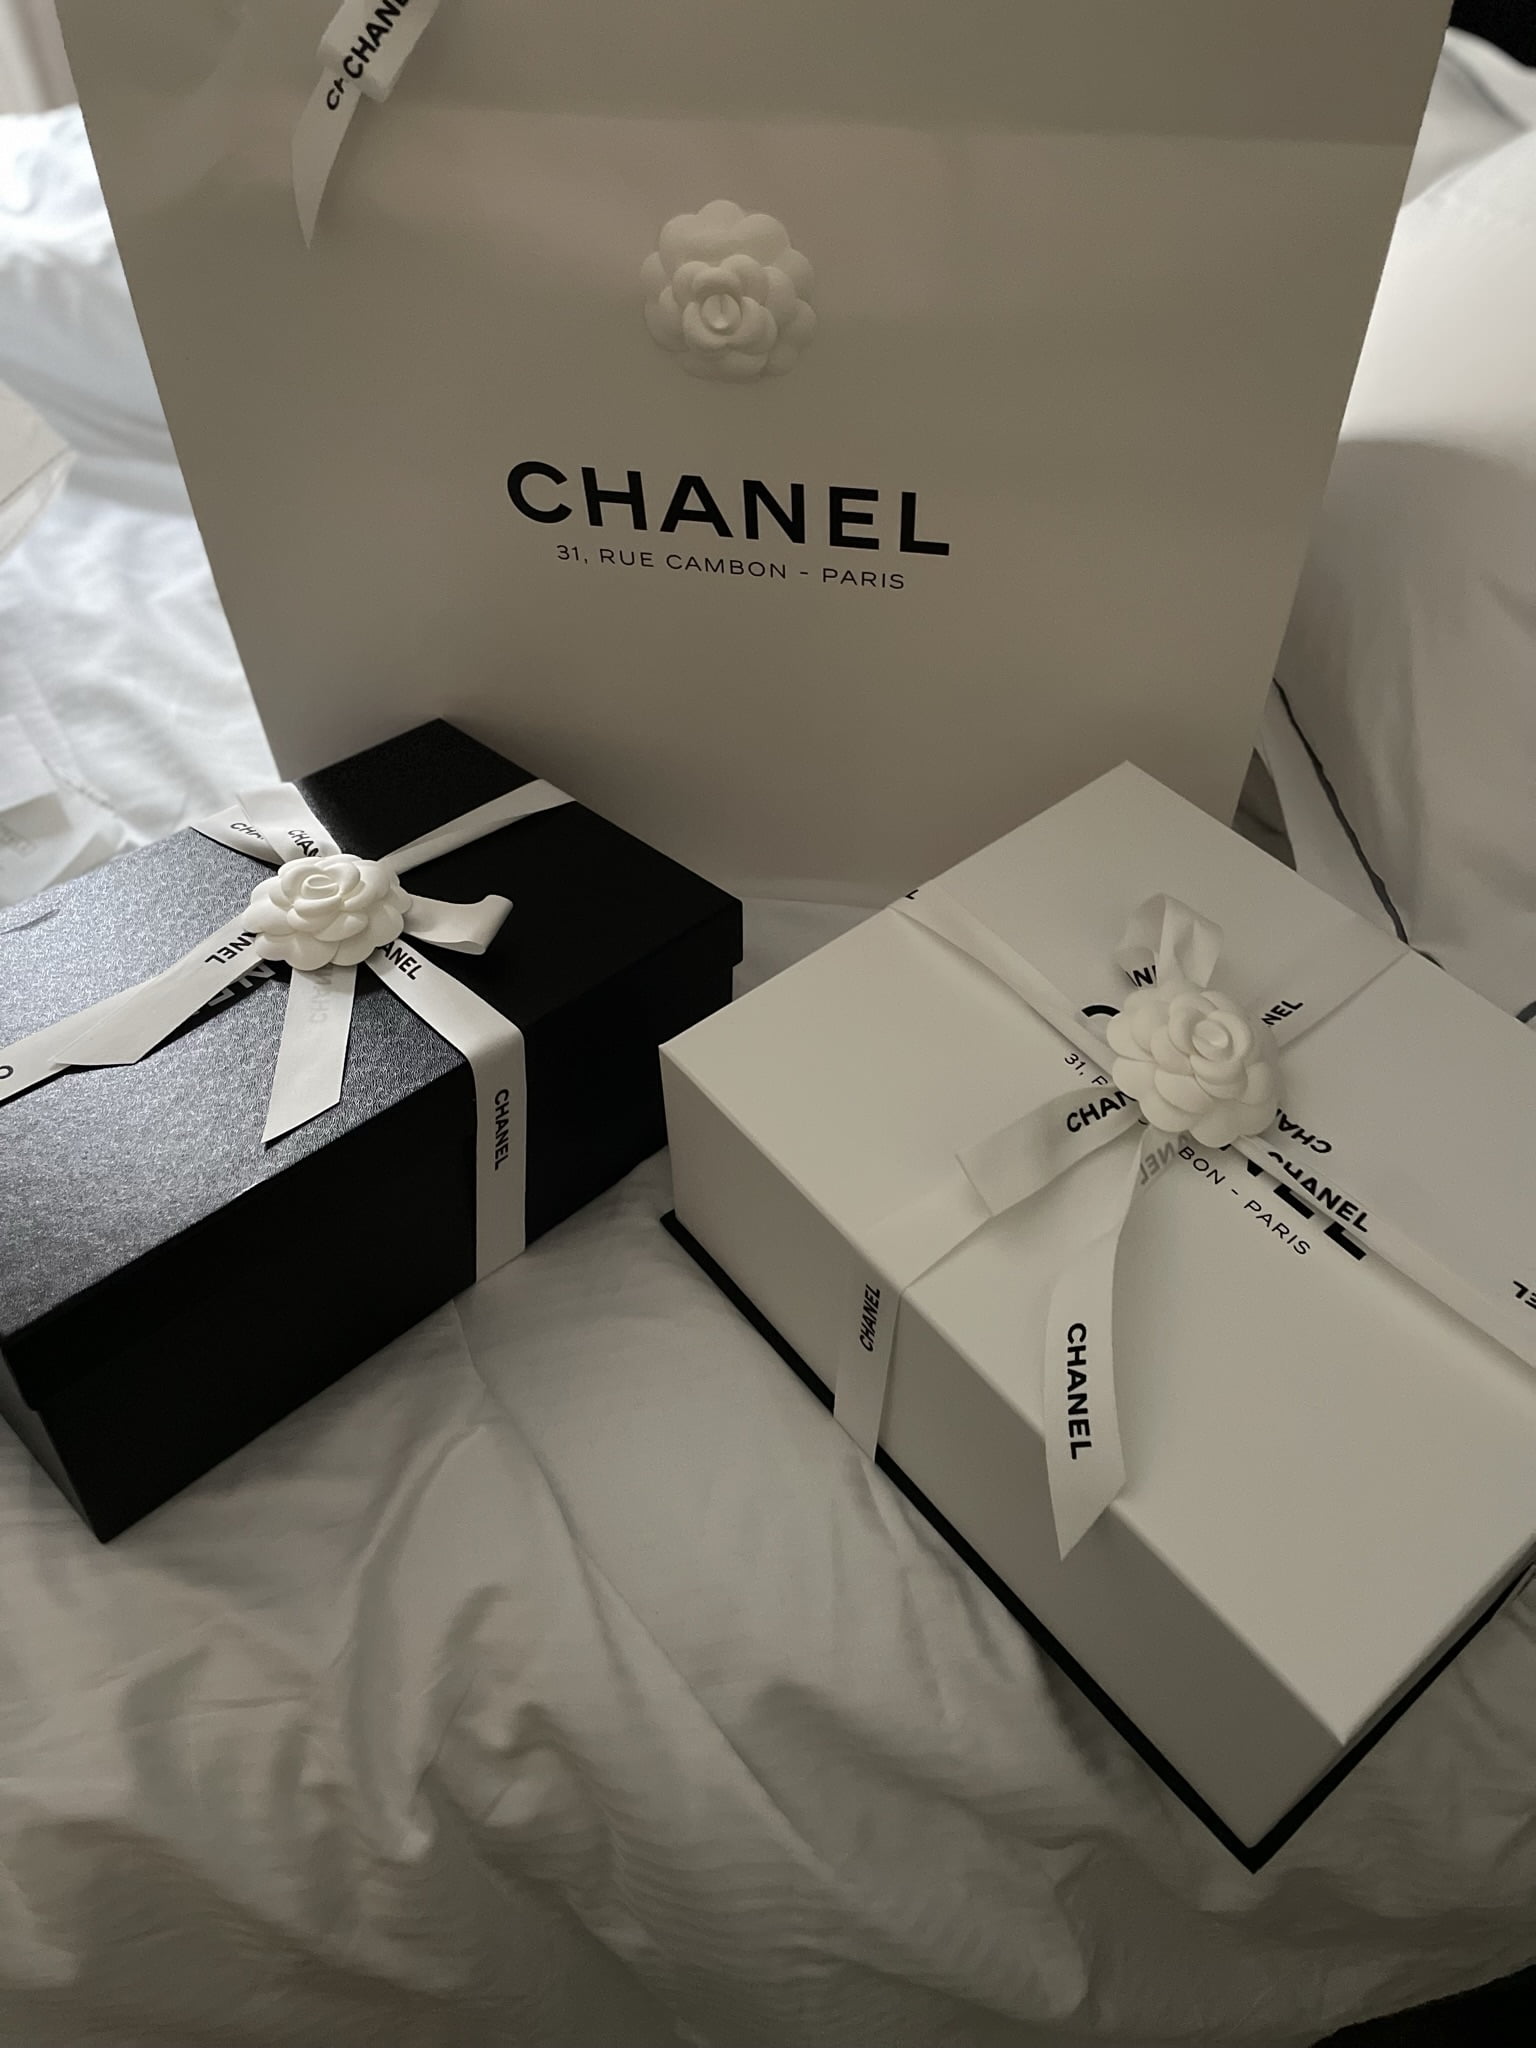 Chanel Classic Flap Size Comparison - PurseBop